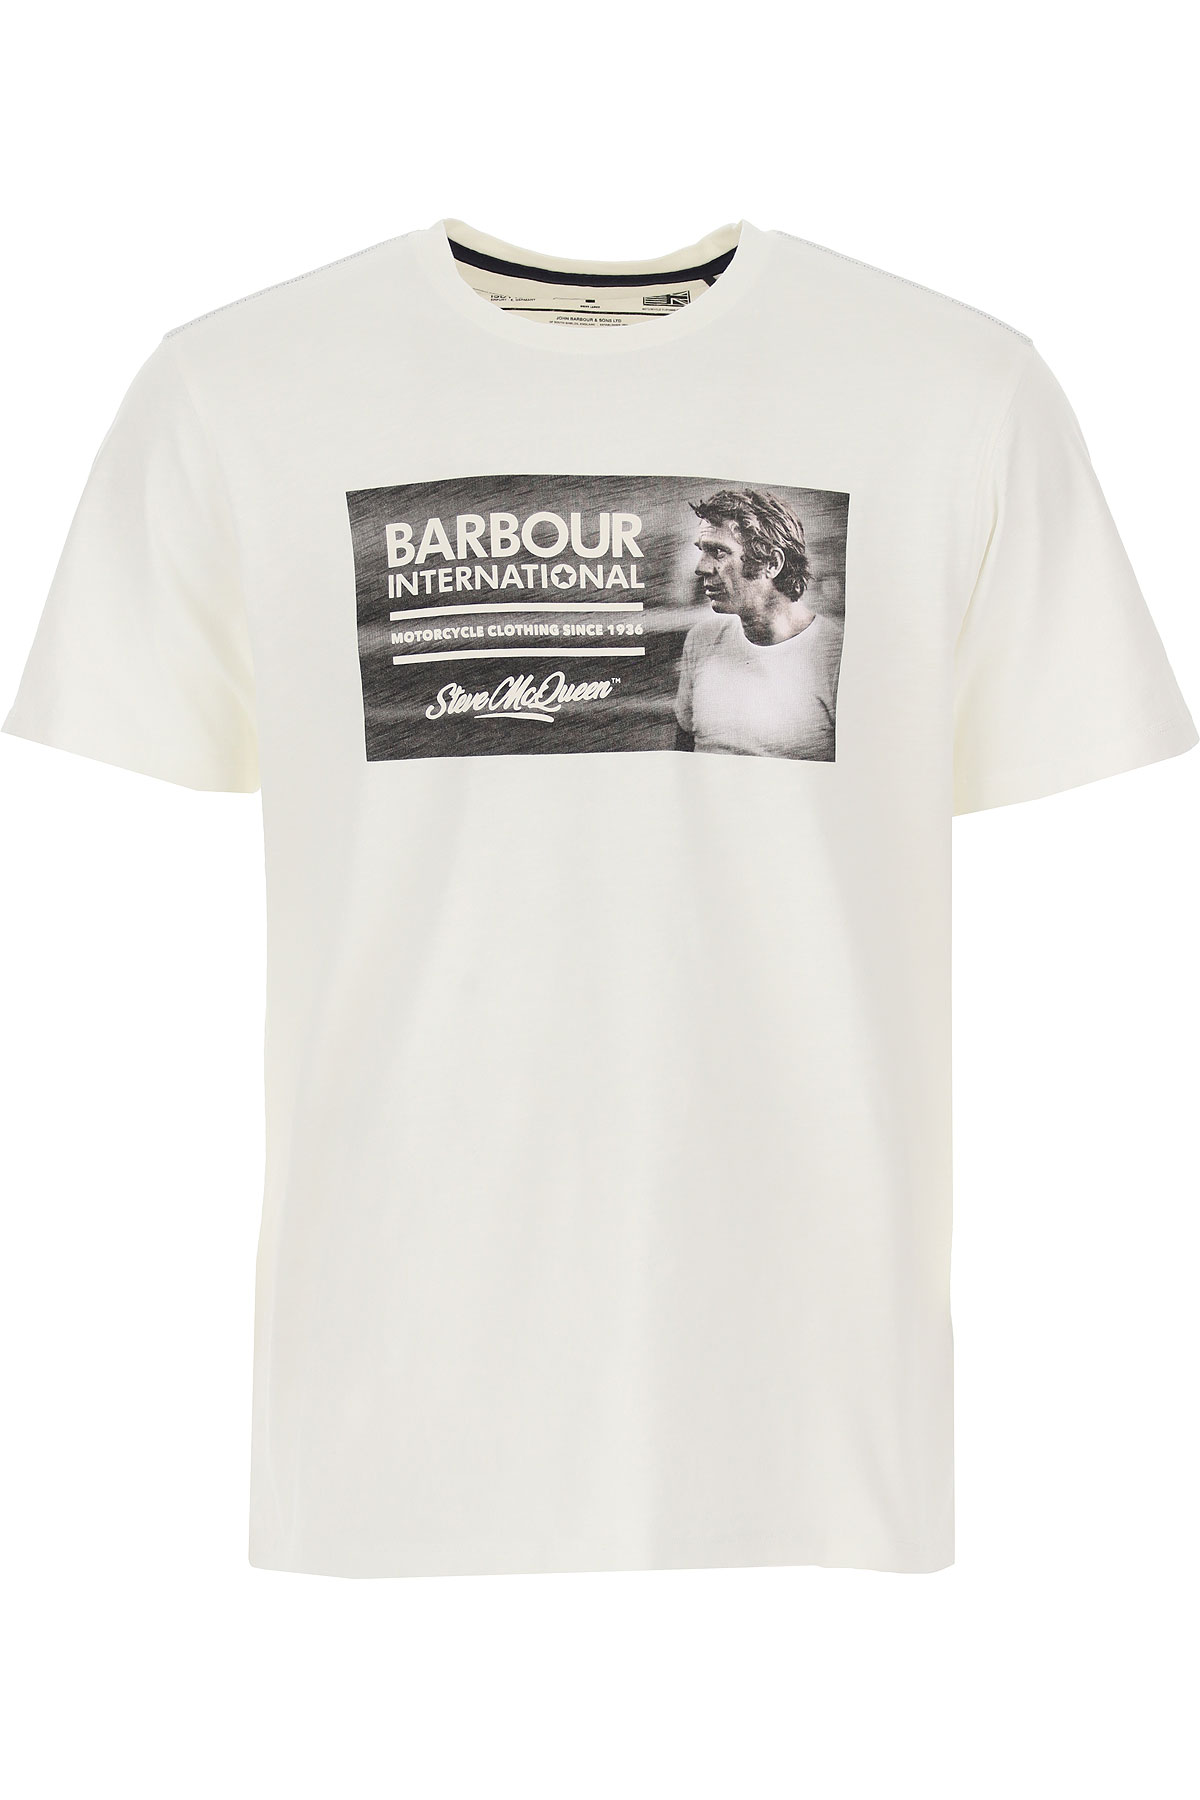 เสื้อผ้าสำหรับผู้ชาย Barbour, Style code mts0931wh32